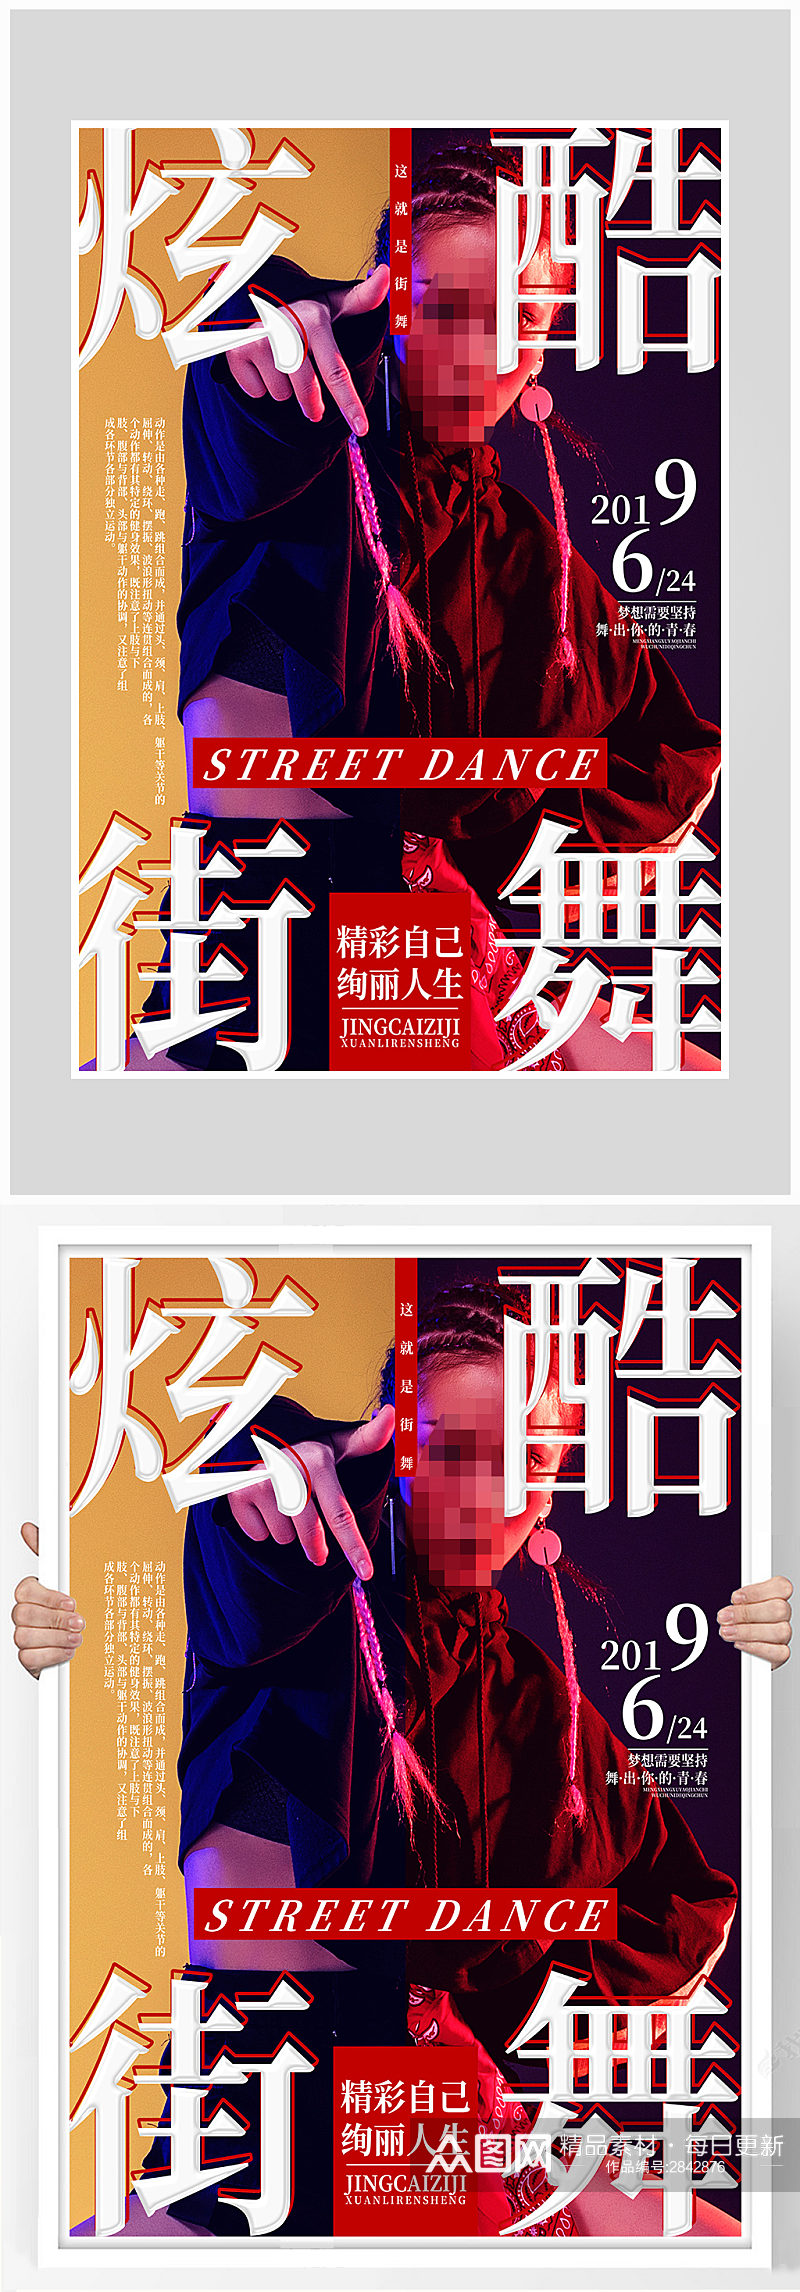 创意炫酷街舞培训海报设计素材